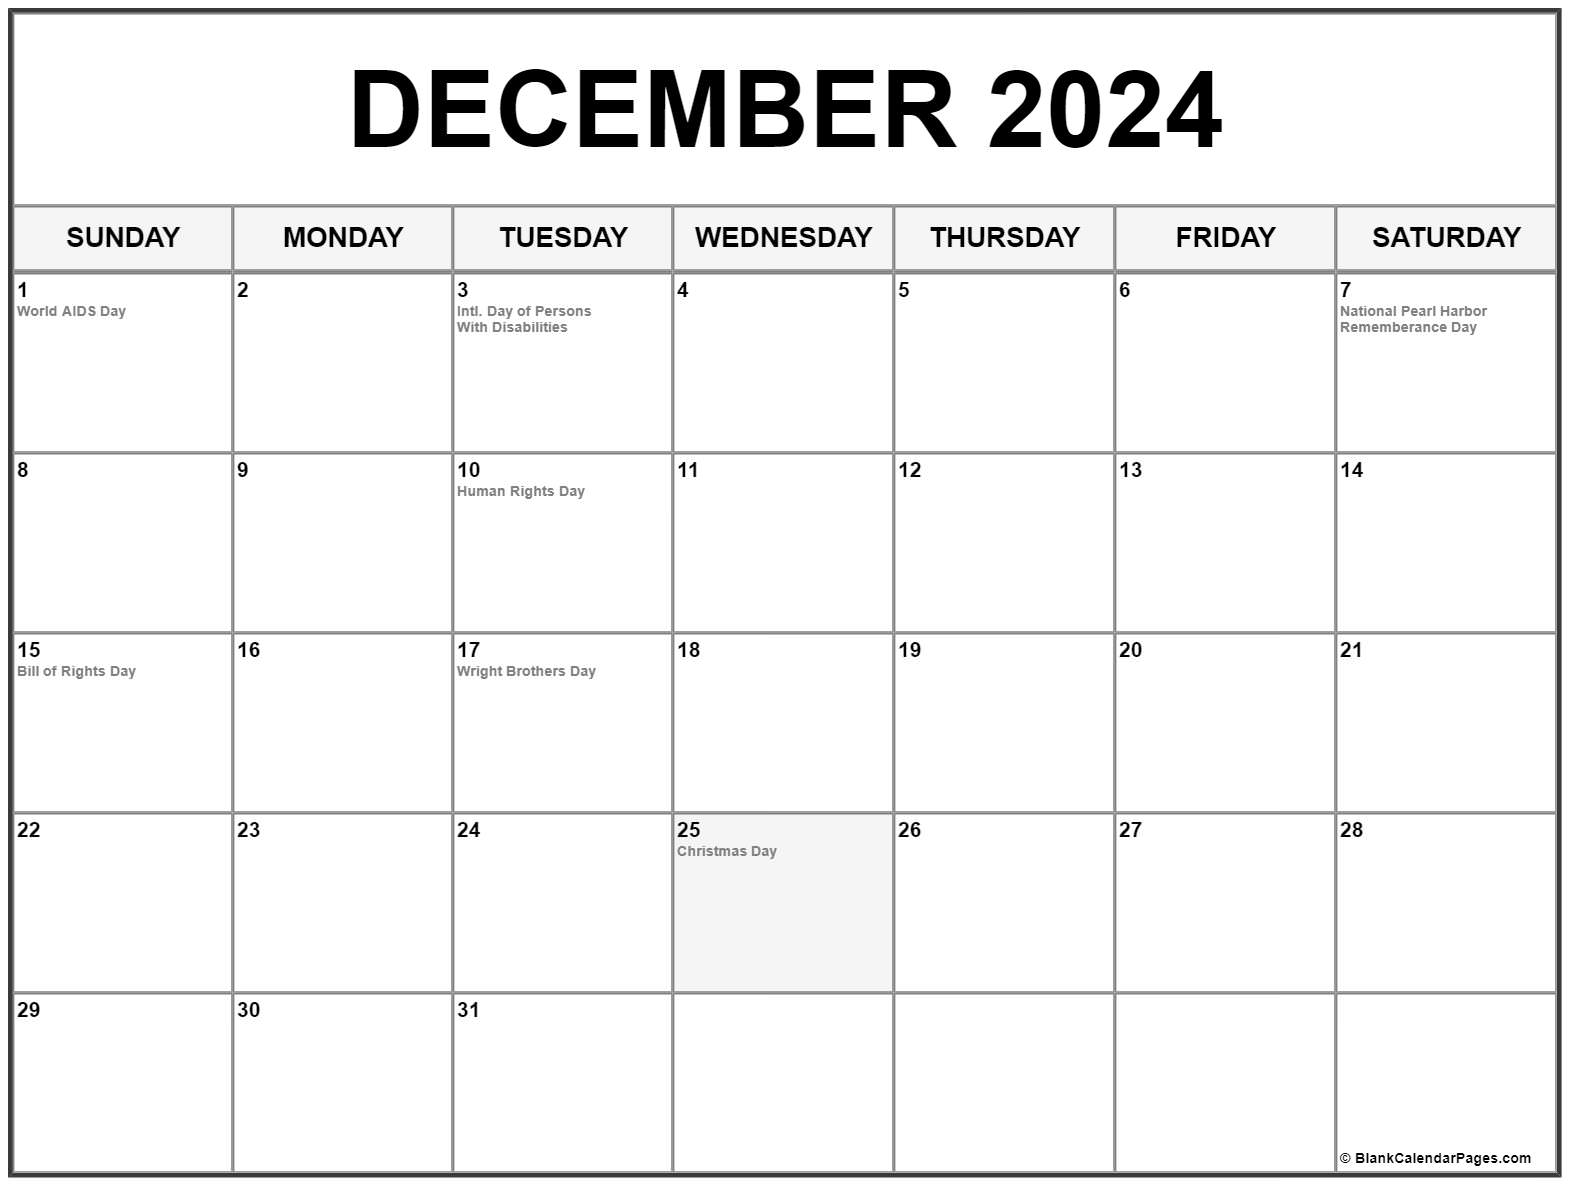 Dec 2022 Calendar With Holidays December 2022 With Holidays Calendar